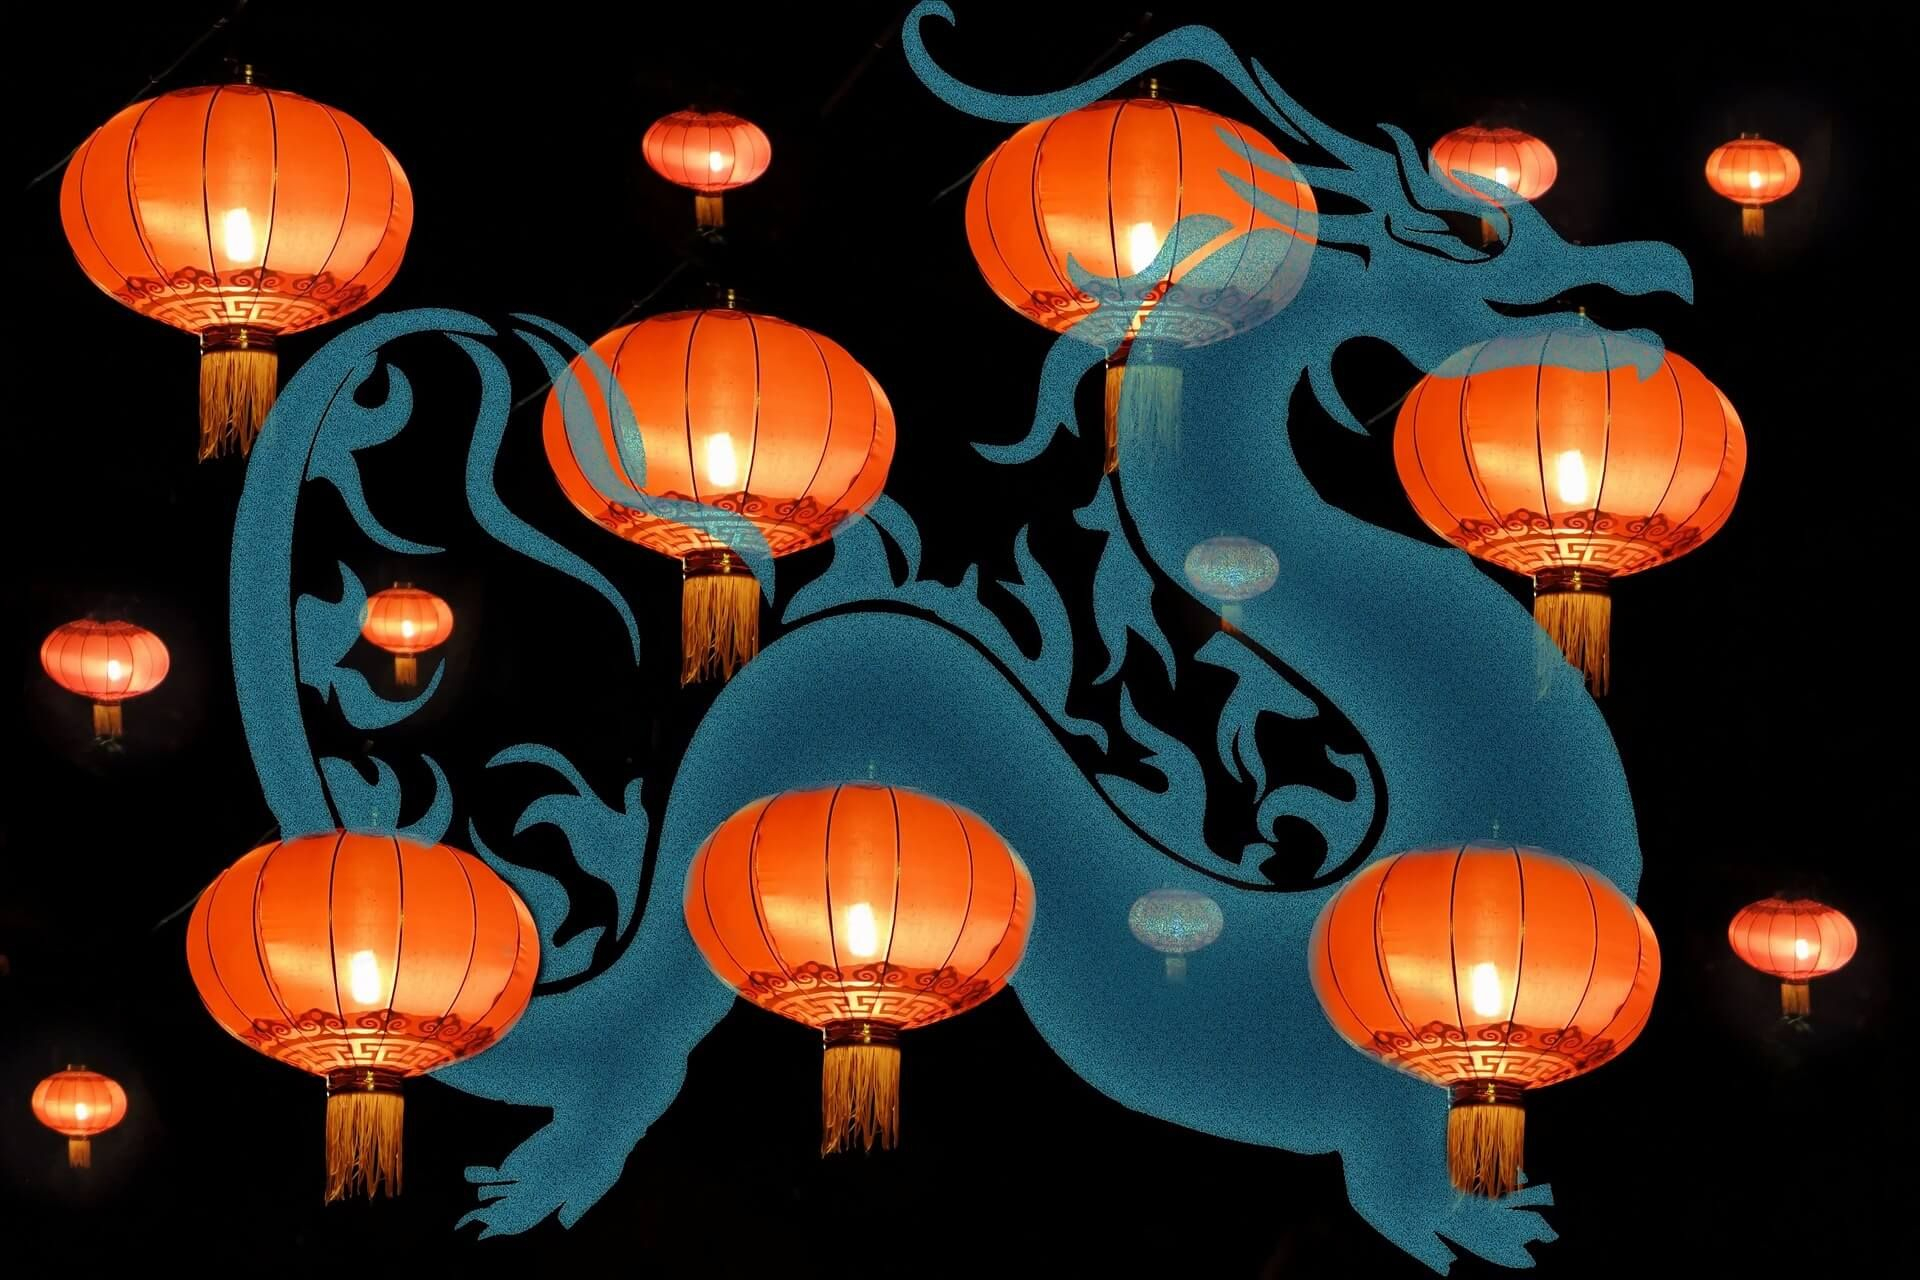 Chinese New Year Animals - The Zodiac Animals 2020